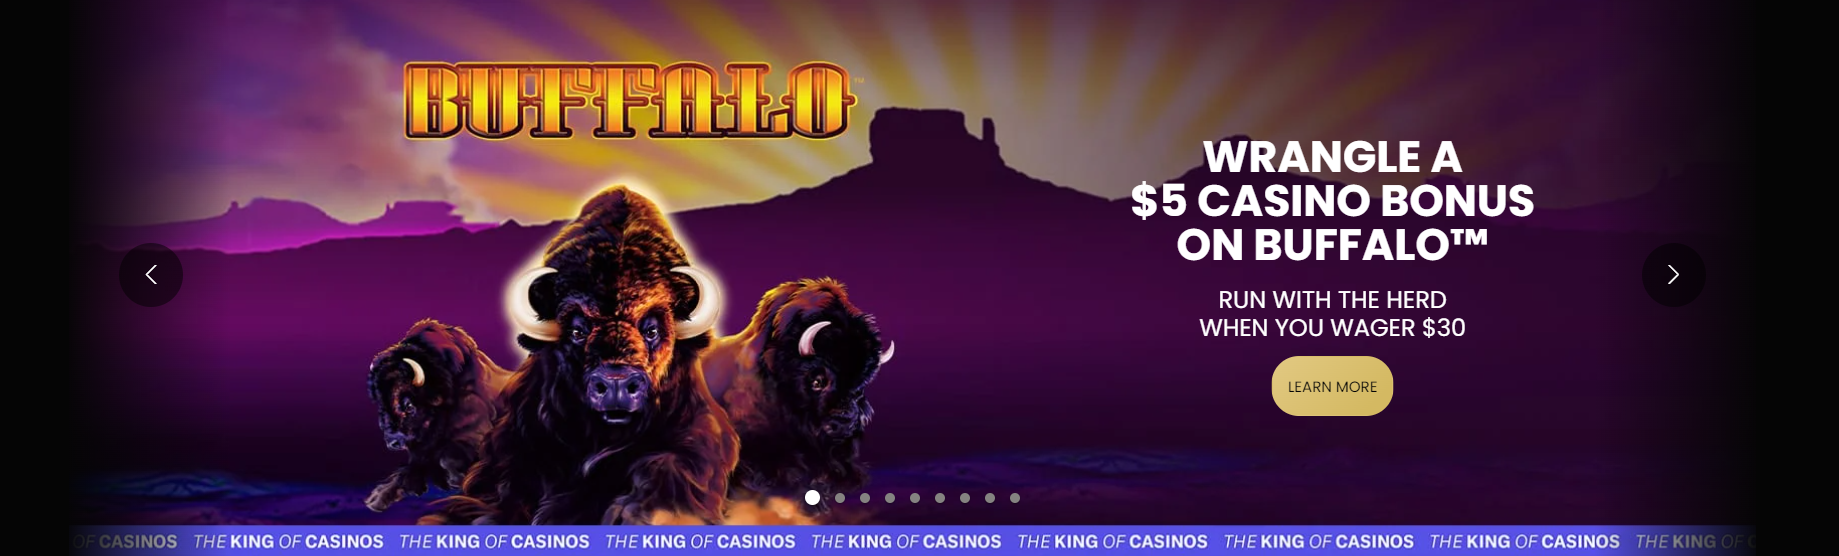 Buffalo Slot $5 Casino Bonus  BetMGM PA